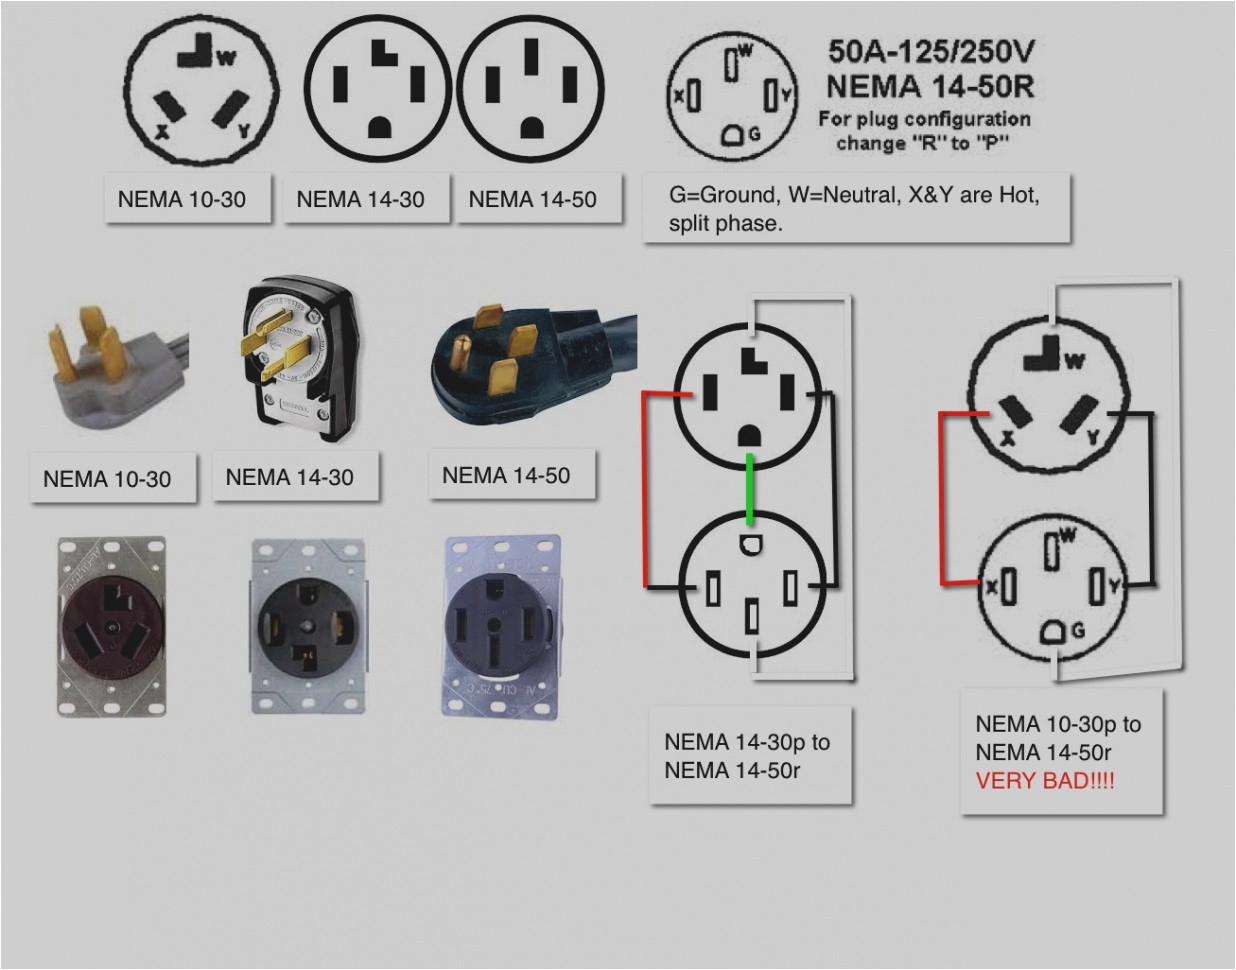 nema 14 wiring diagram wiring diagramnema 1450r u2013 wiring diagraminspirational nema 14 50r wiring